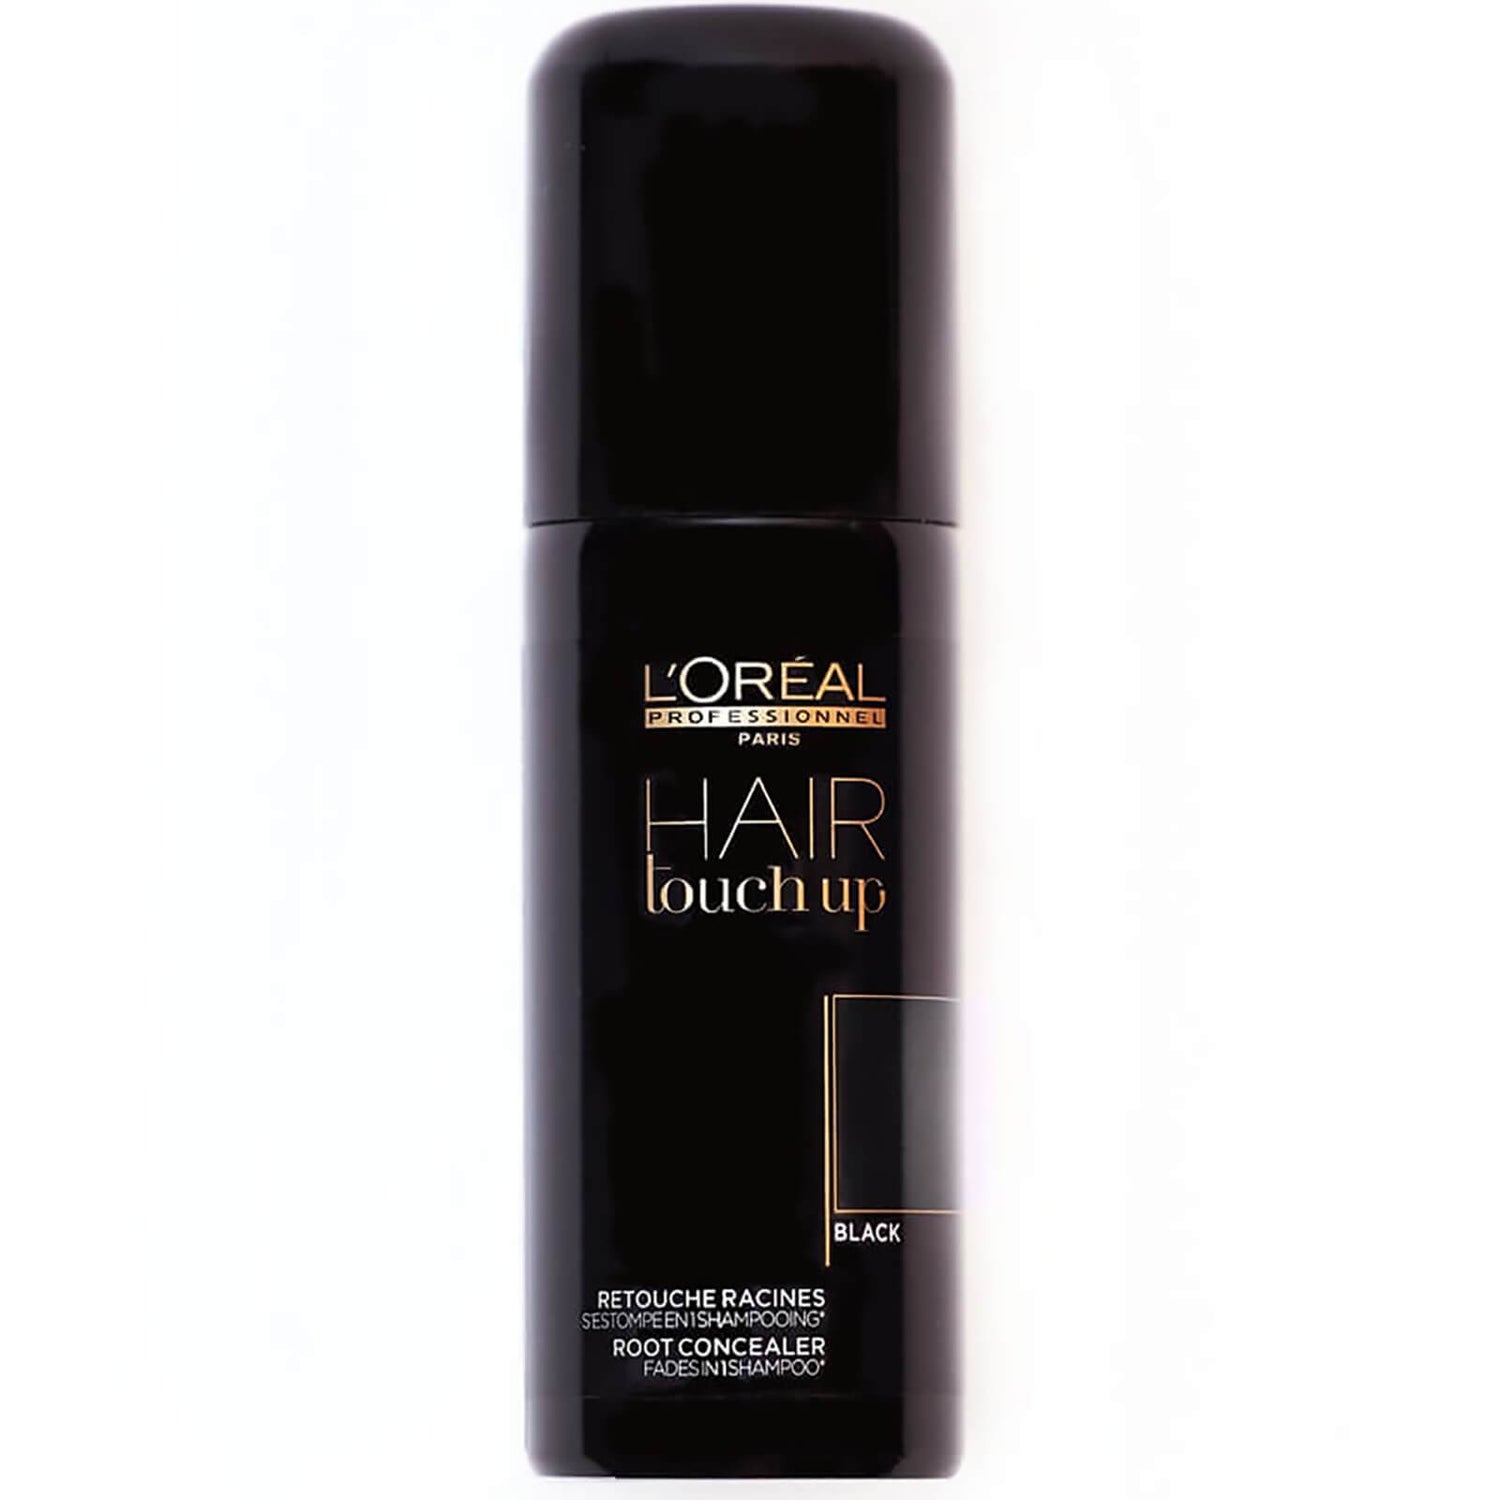 L’Oréal Professionnel Hair Touch Up spray retouche racines - Noir (75ml)